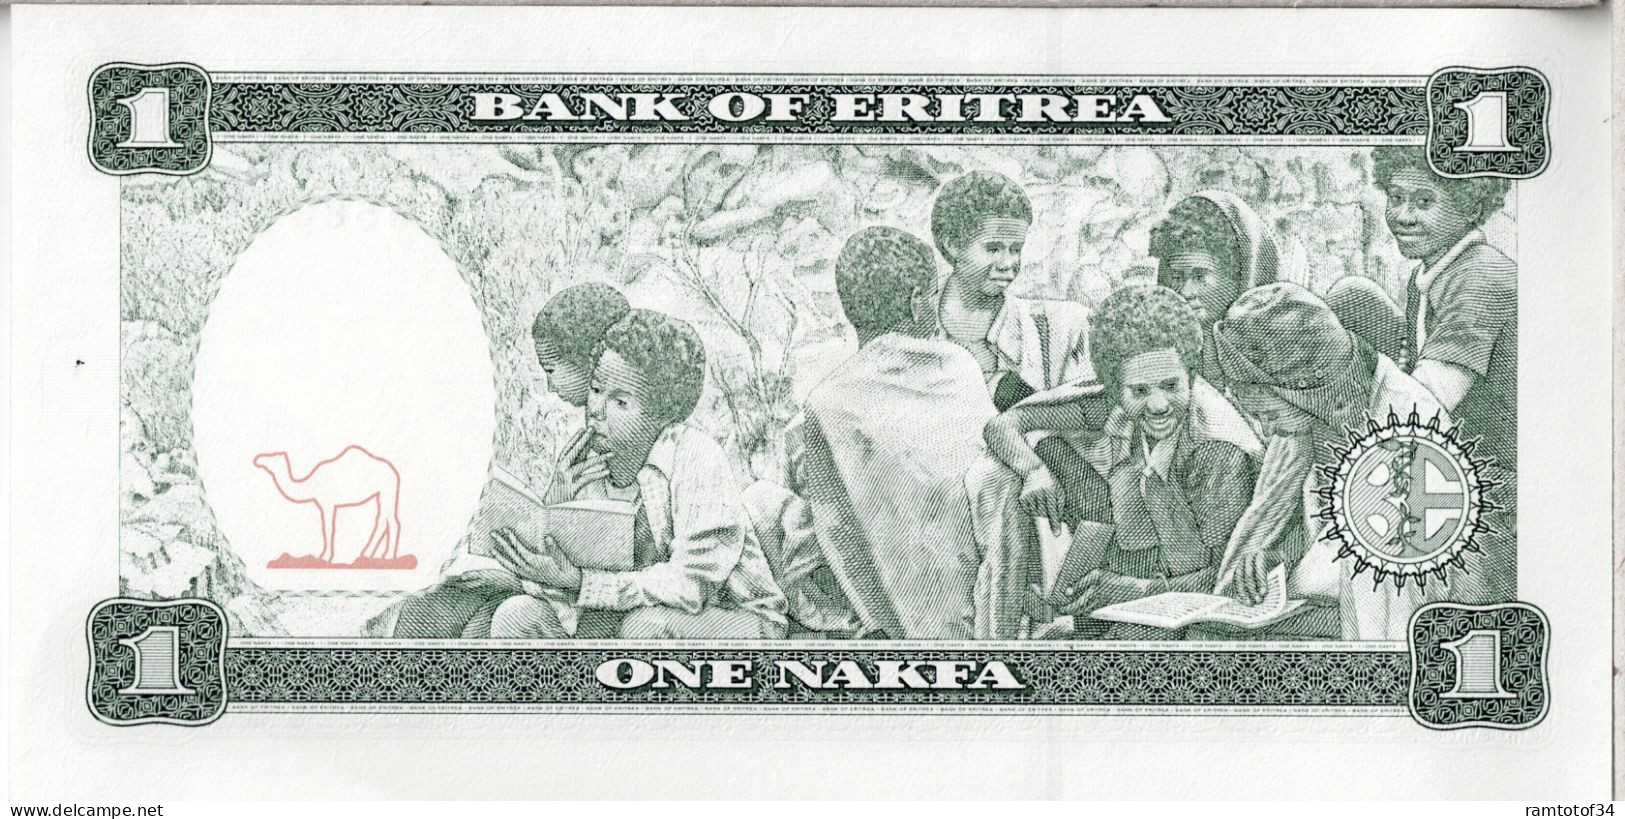 ERYTHREE - 1 Nakfa 1997 UNC - Erythrée